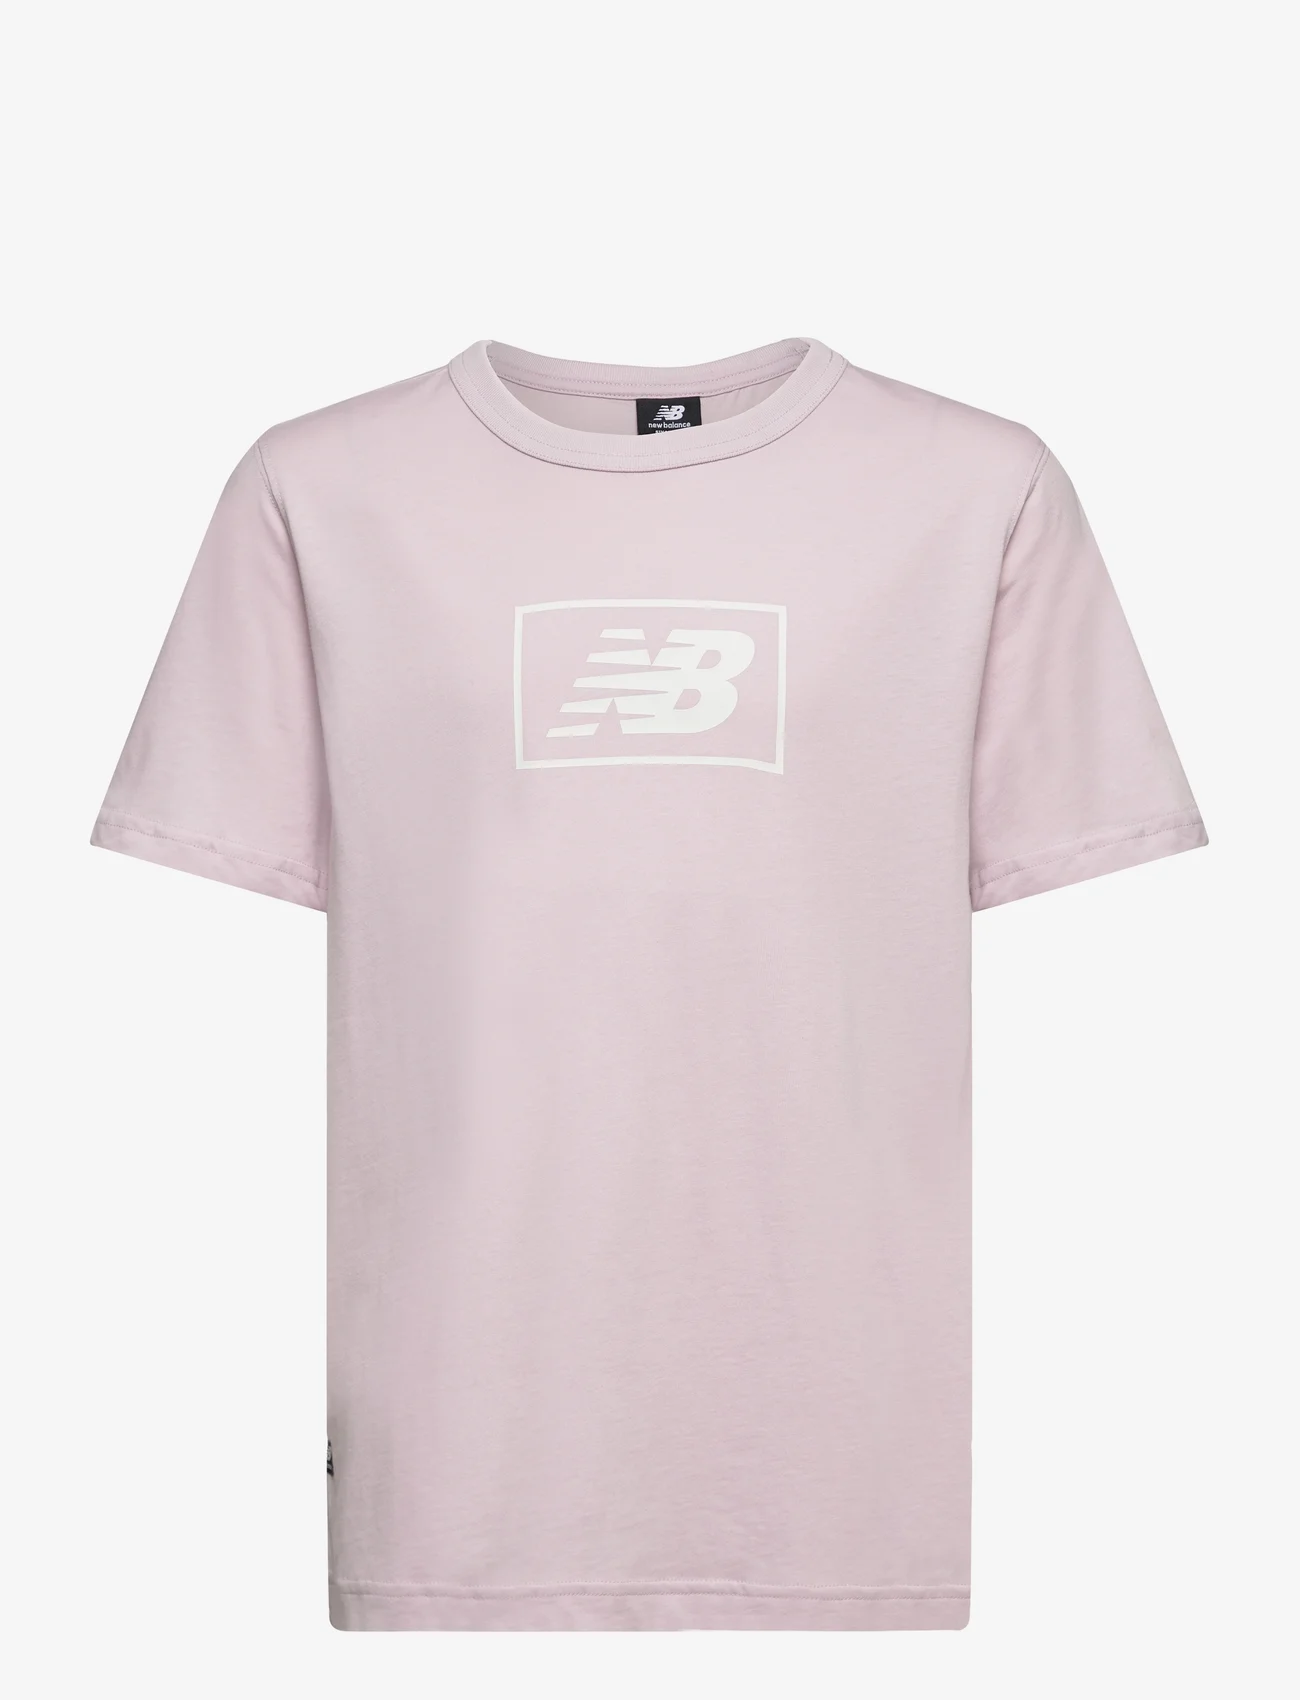 New Balance - NB Essentials Logo Tee - short-sleeved t-shirts - december sky - 0